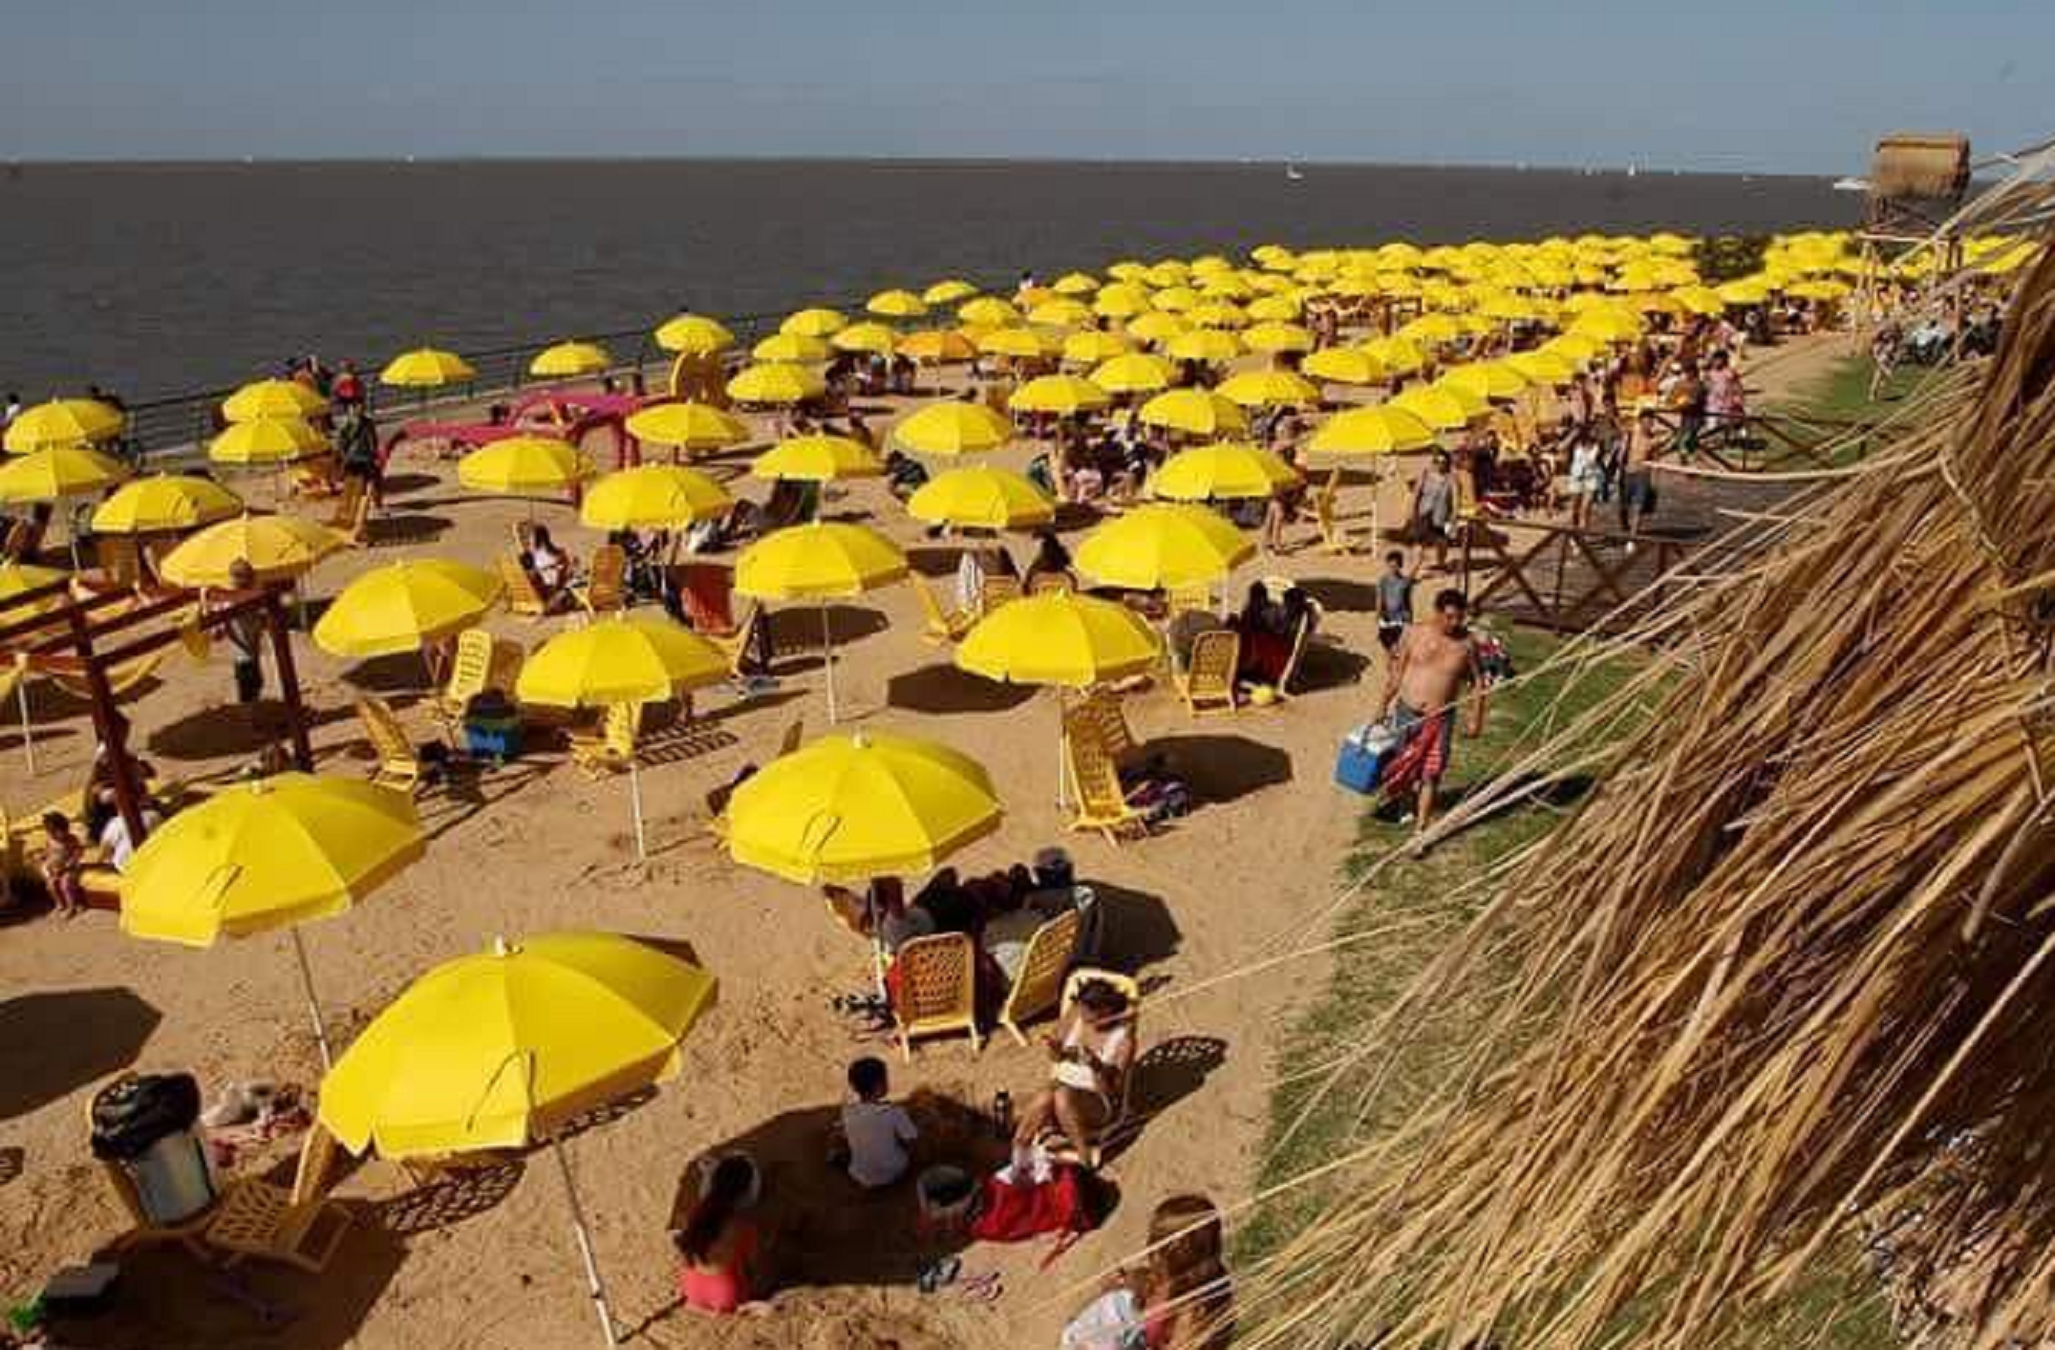 Toni Soler i Mainat fan campanya per treure les creus grogues de les platges